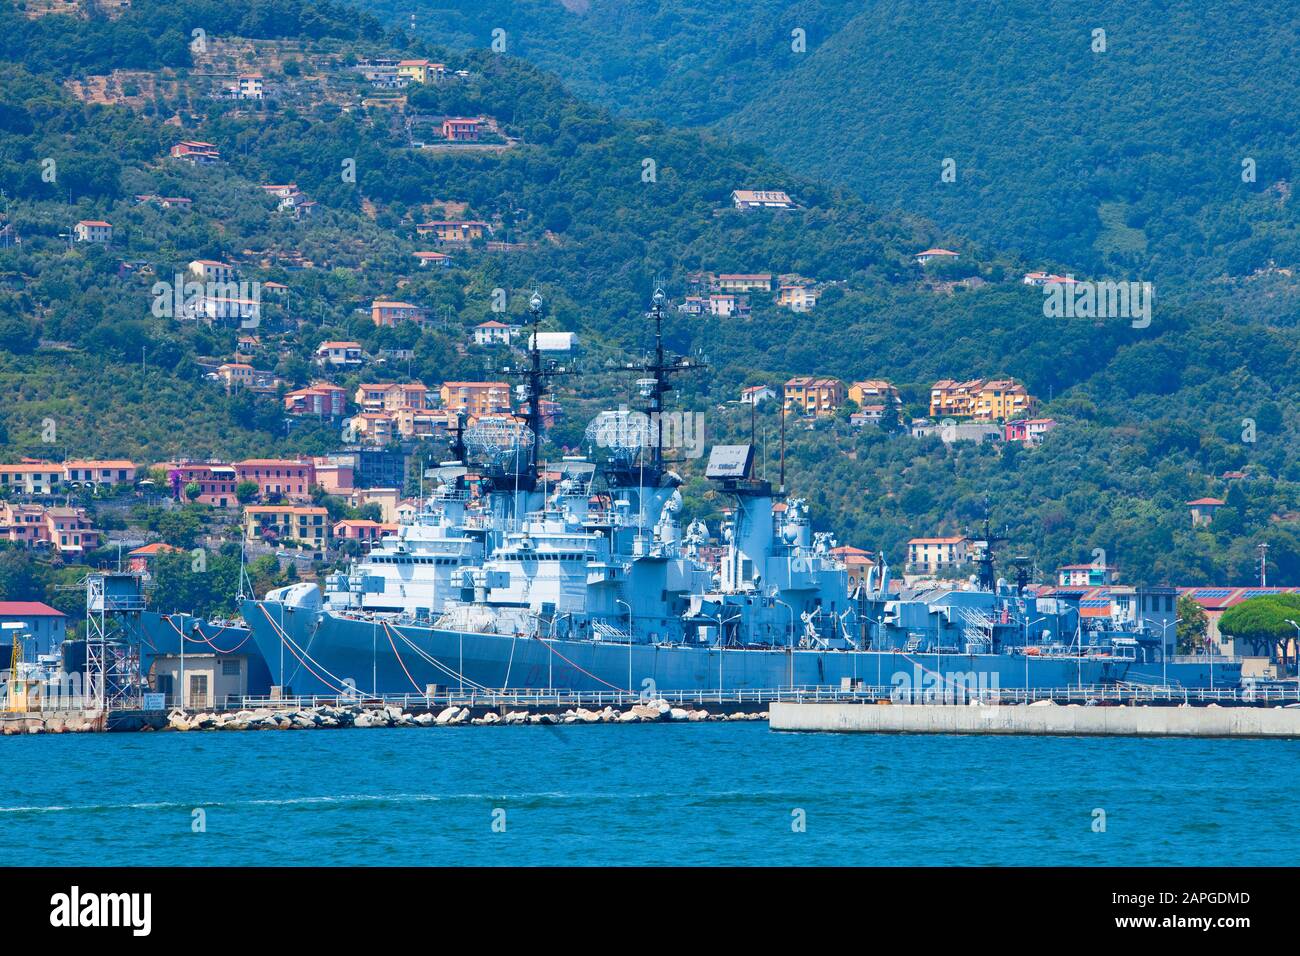 Italy, Liguria - Italy Navy Ship in Port of La Spezia. Stock Photo